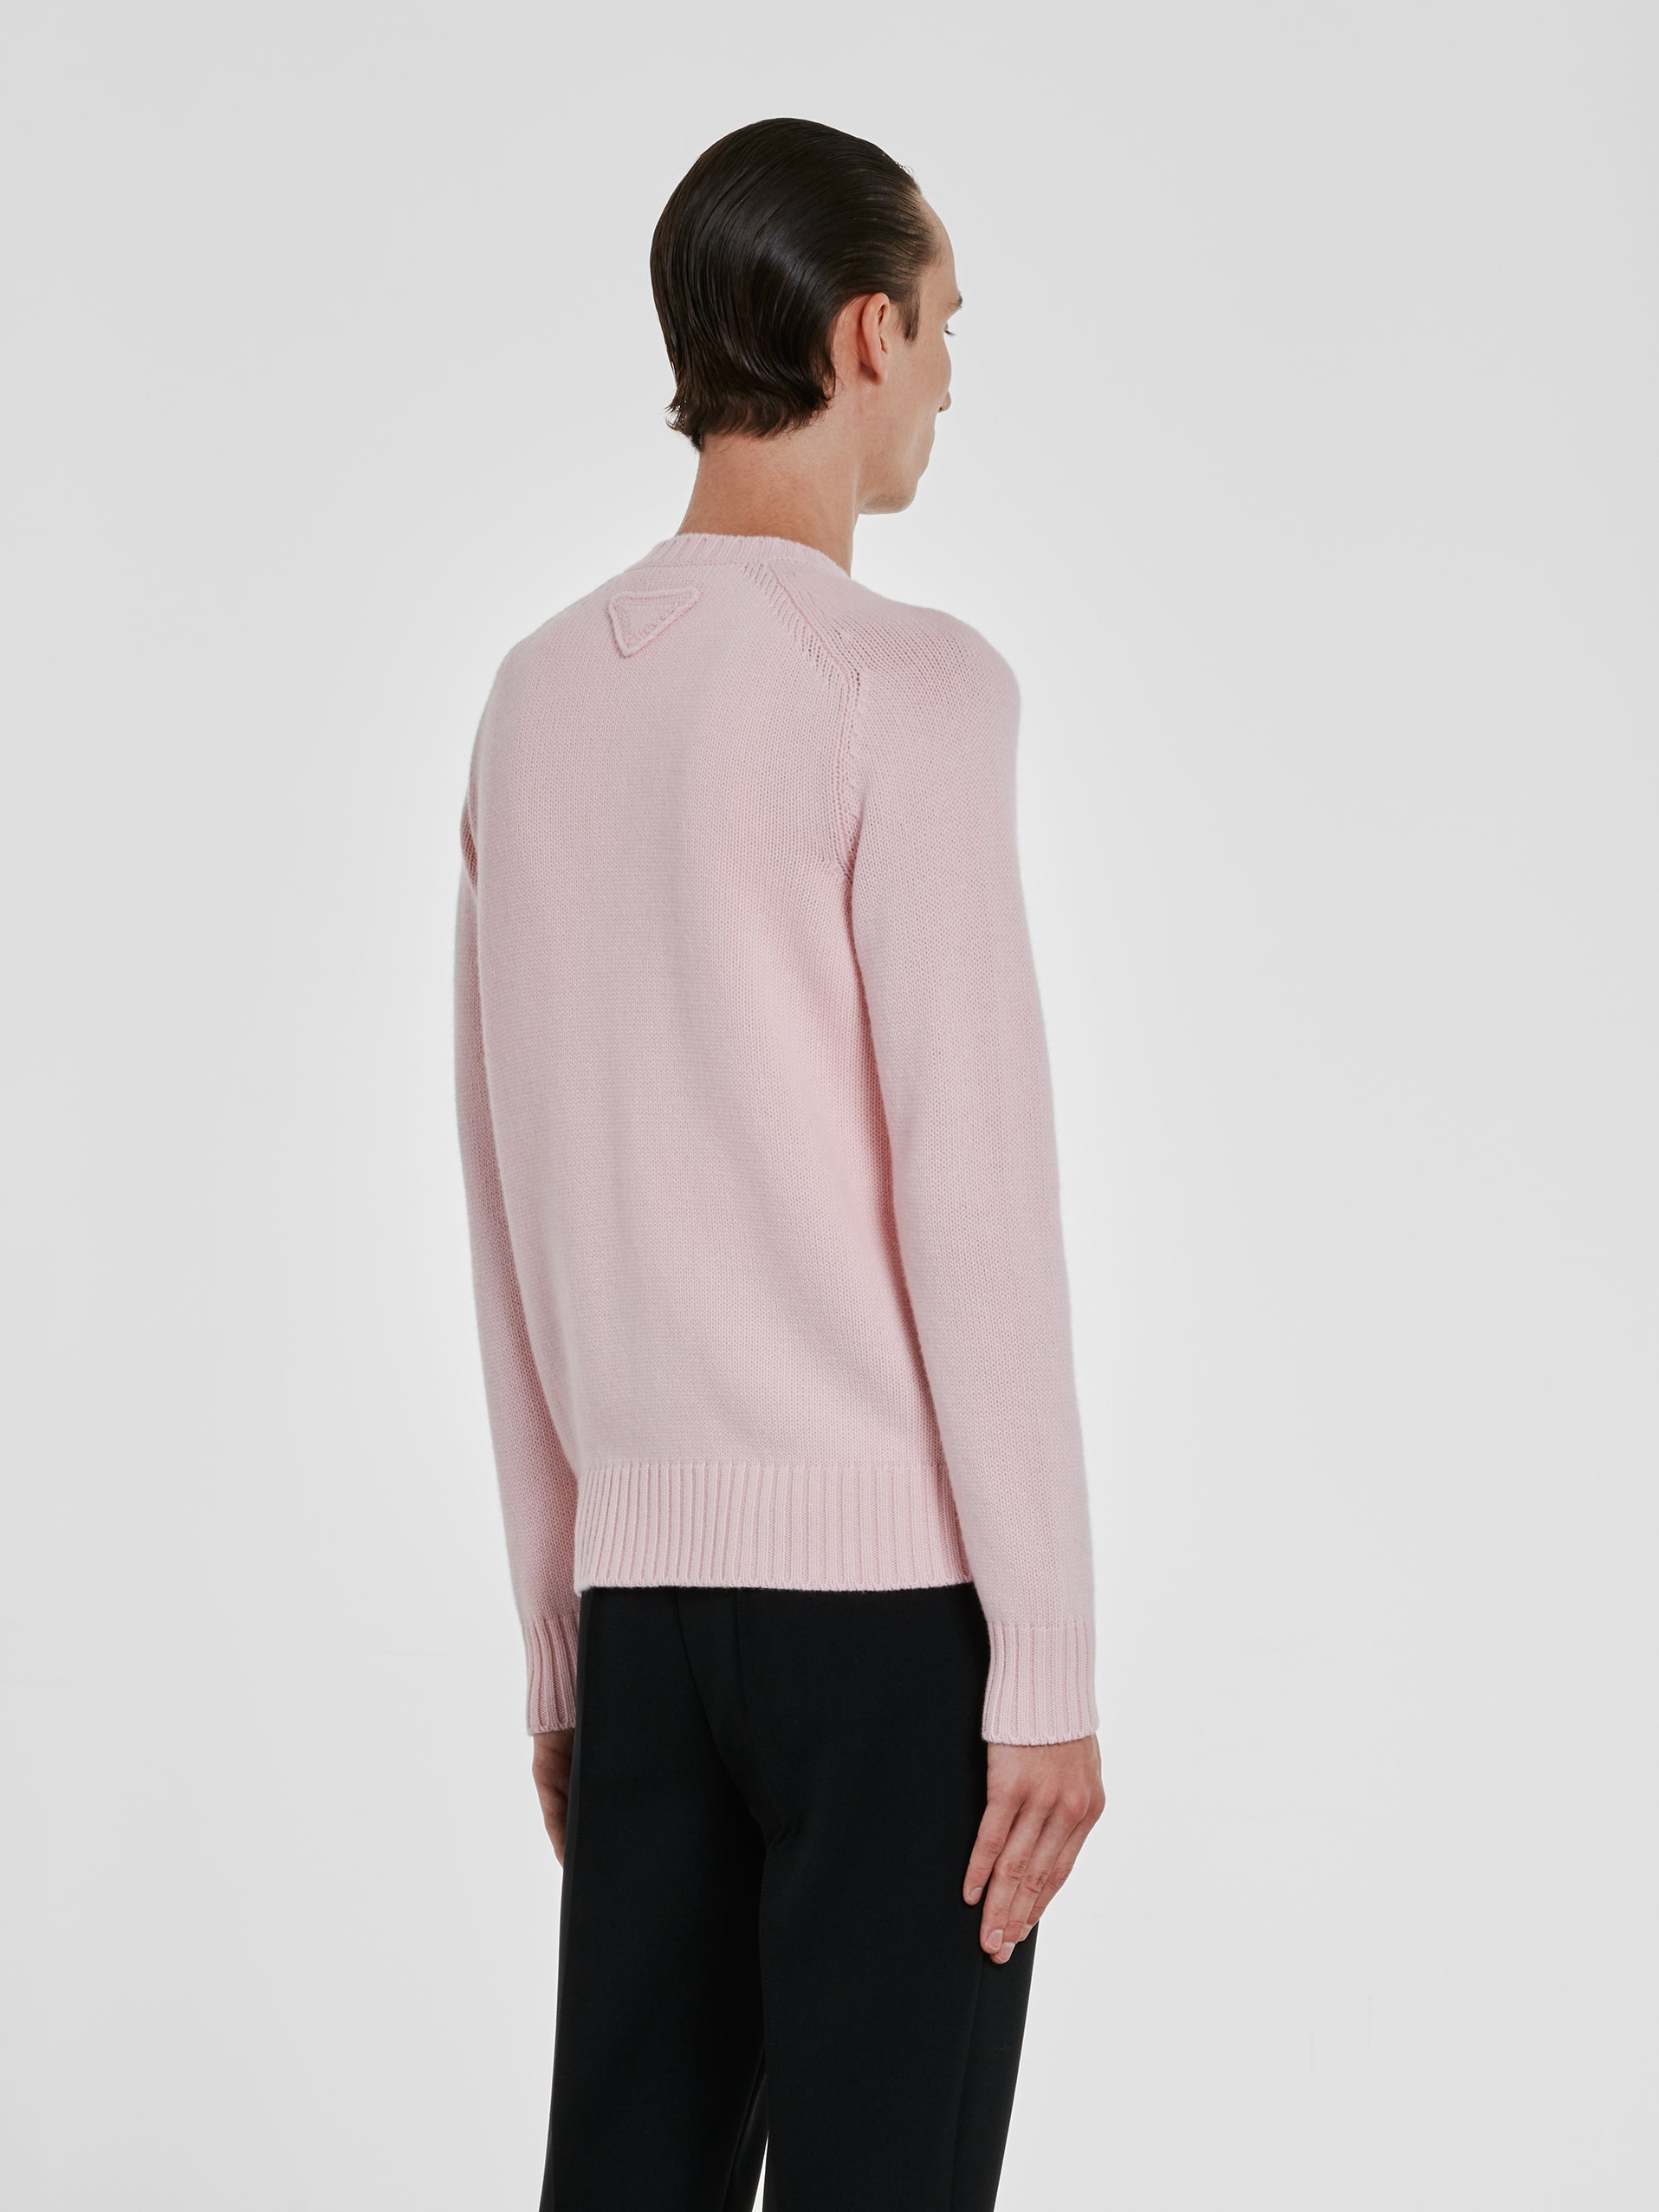 Prada - Men’s Wool and Cashmere Cardigan - (Alabaster Pink) view 3